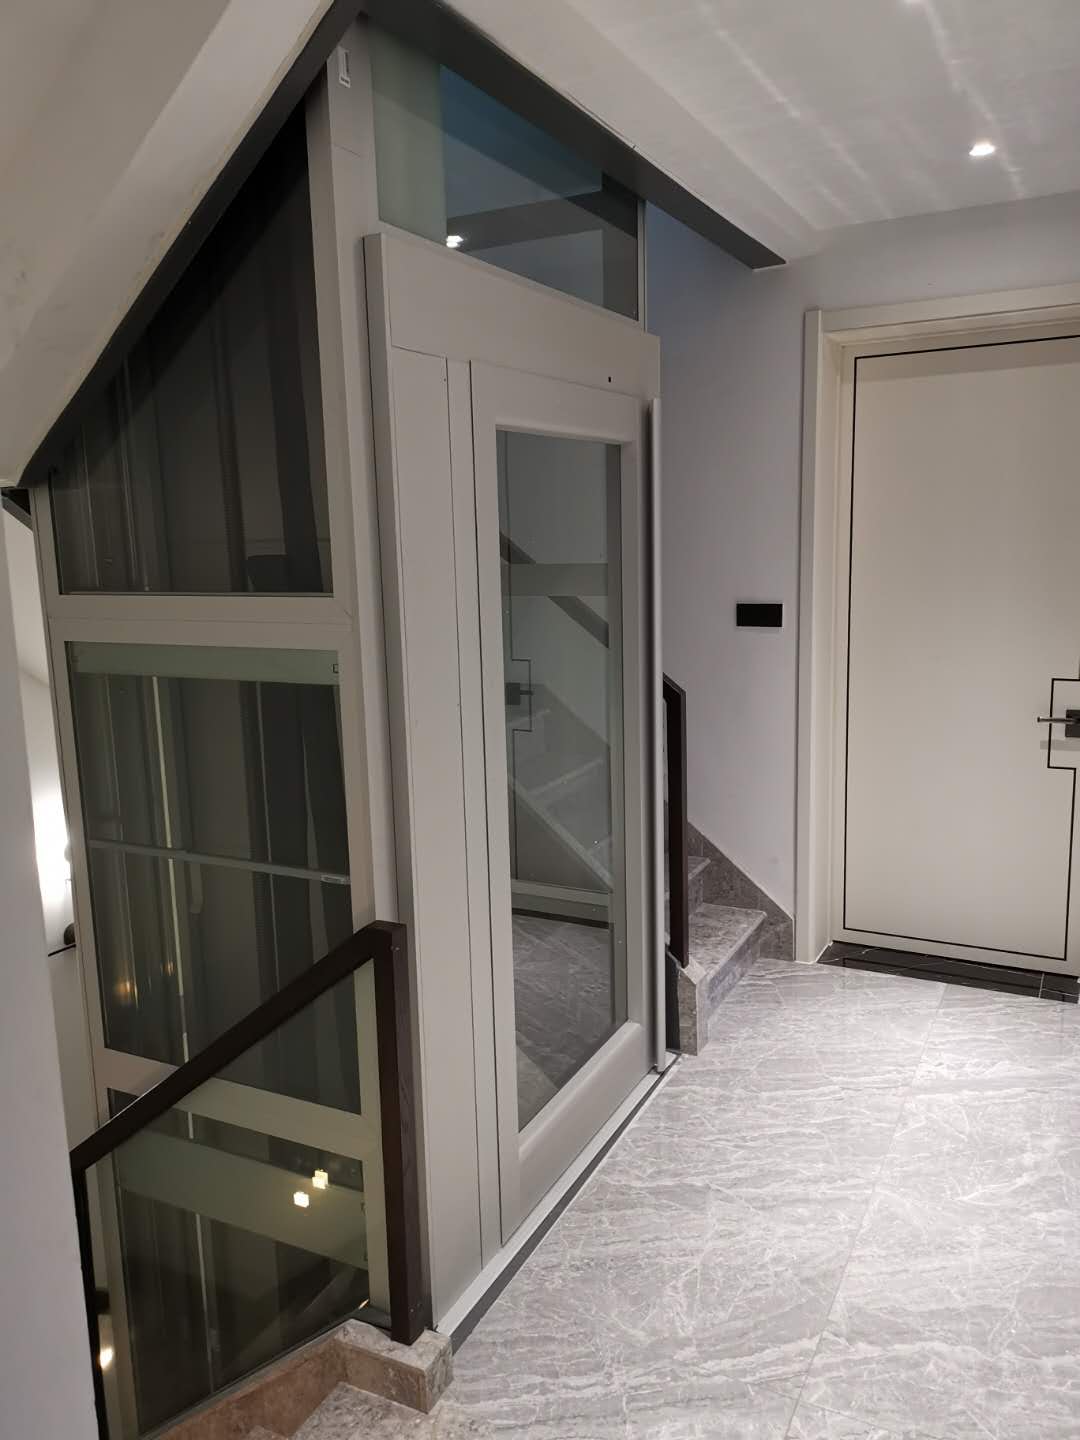 深圳家庭小电梯 毫米级定制尺寸匹配您的居所